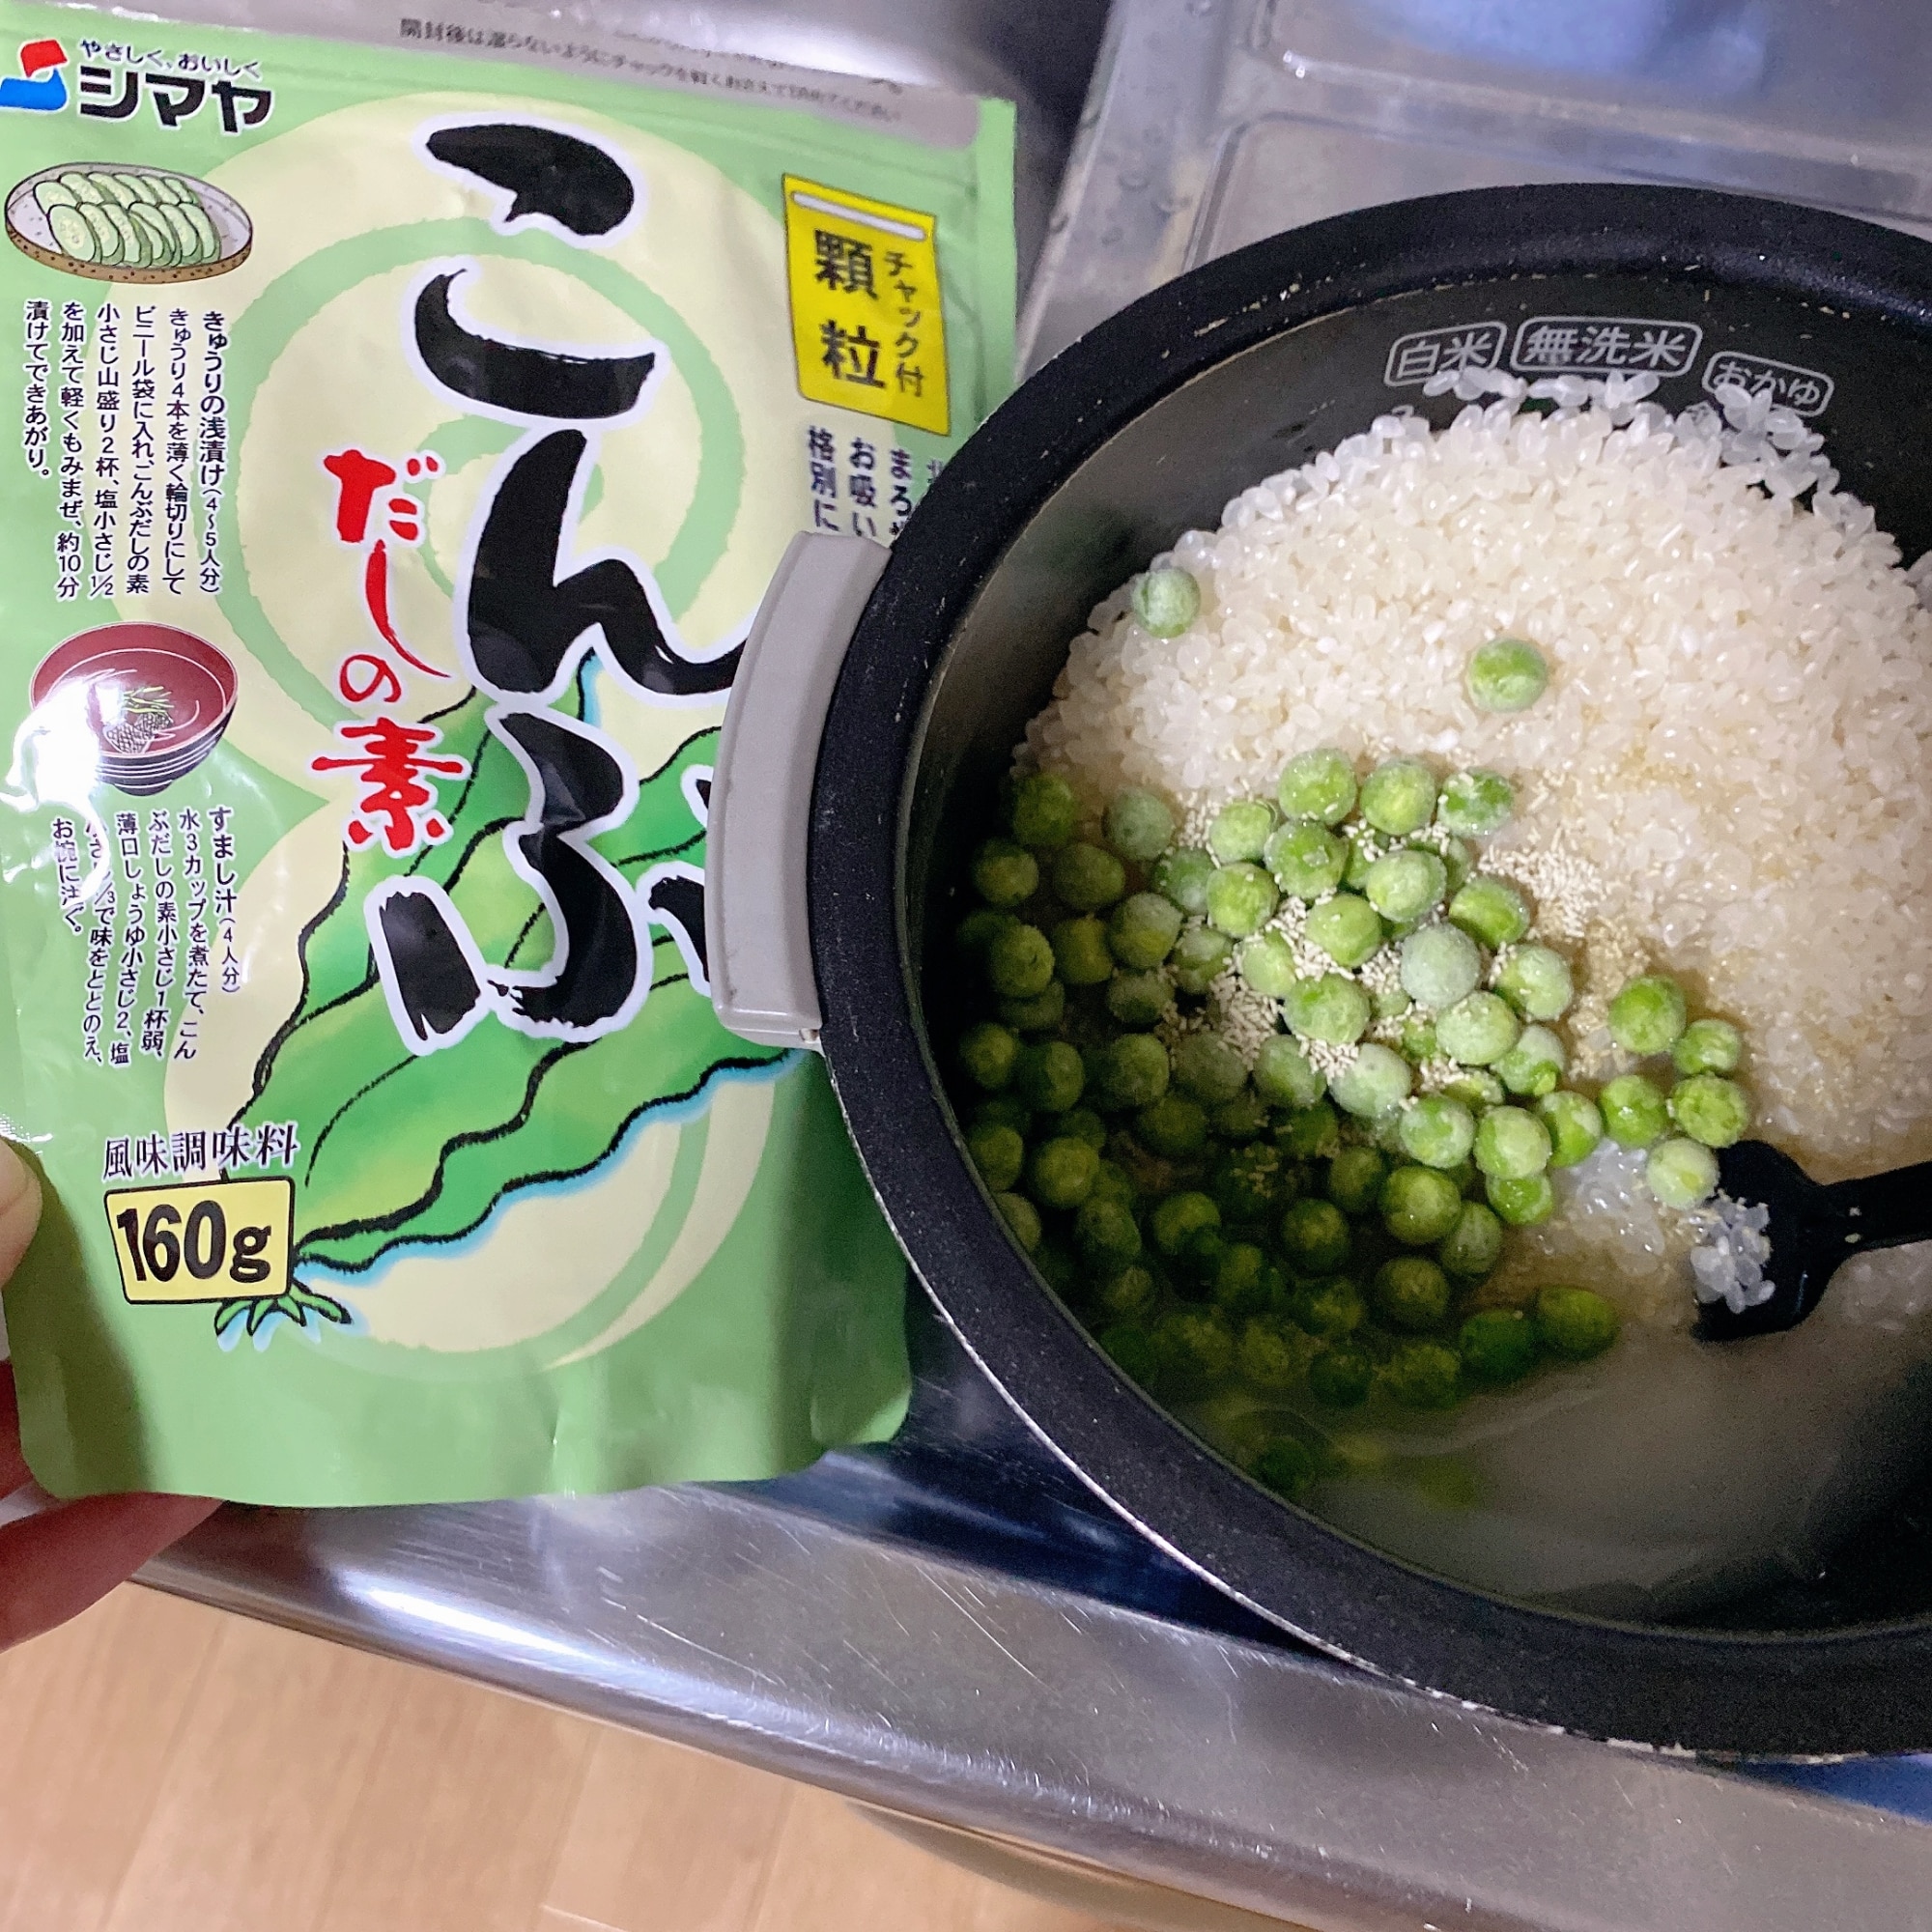 こんぶ出汁の素で簡単豆ご飯 レシピ 作り方 By Reika 4 17 楽天レシピ